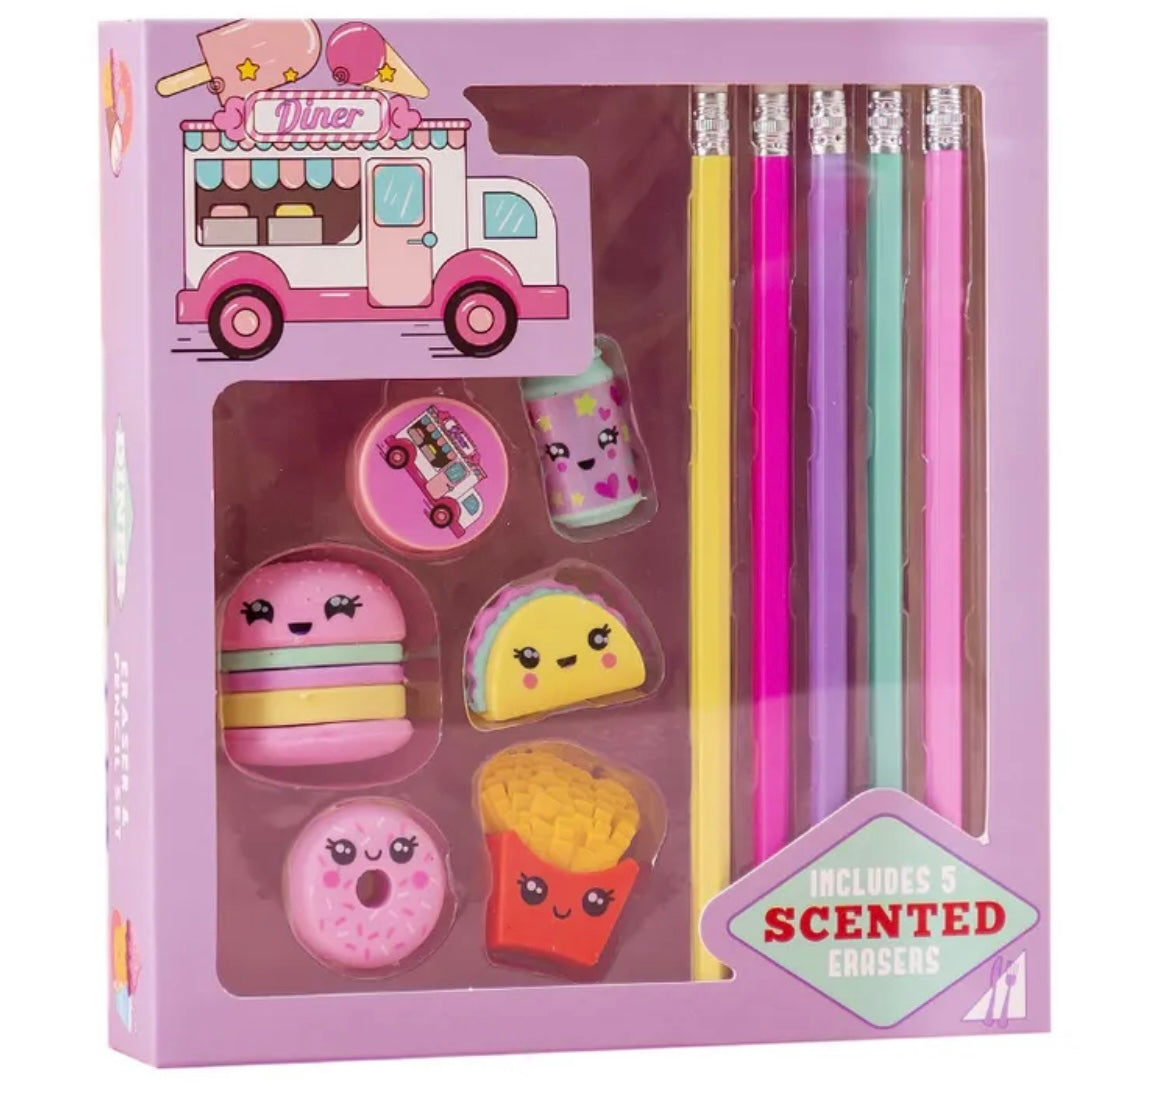 Scented Diner Pencil & Eraser Gift Set